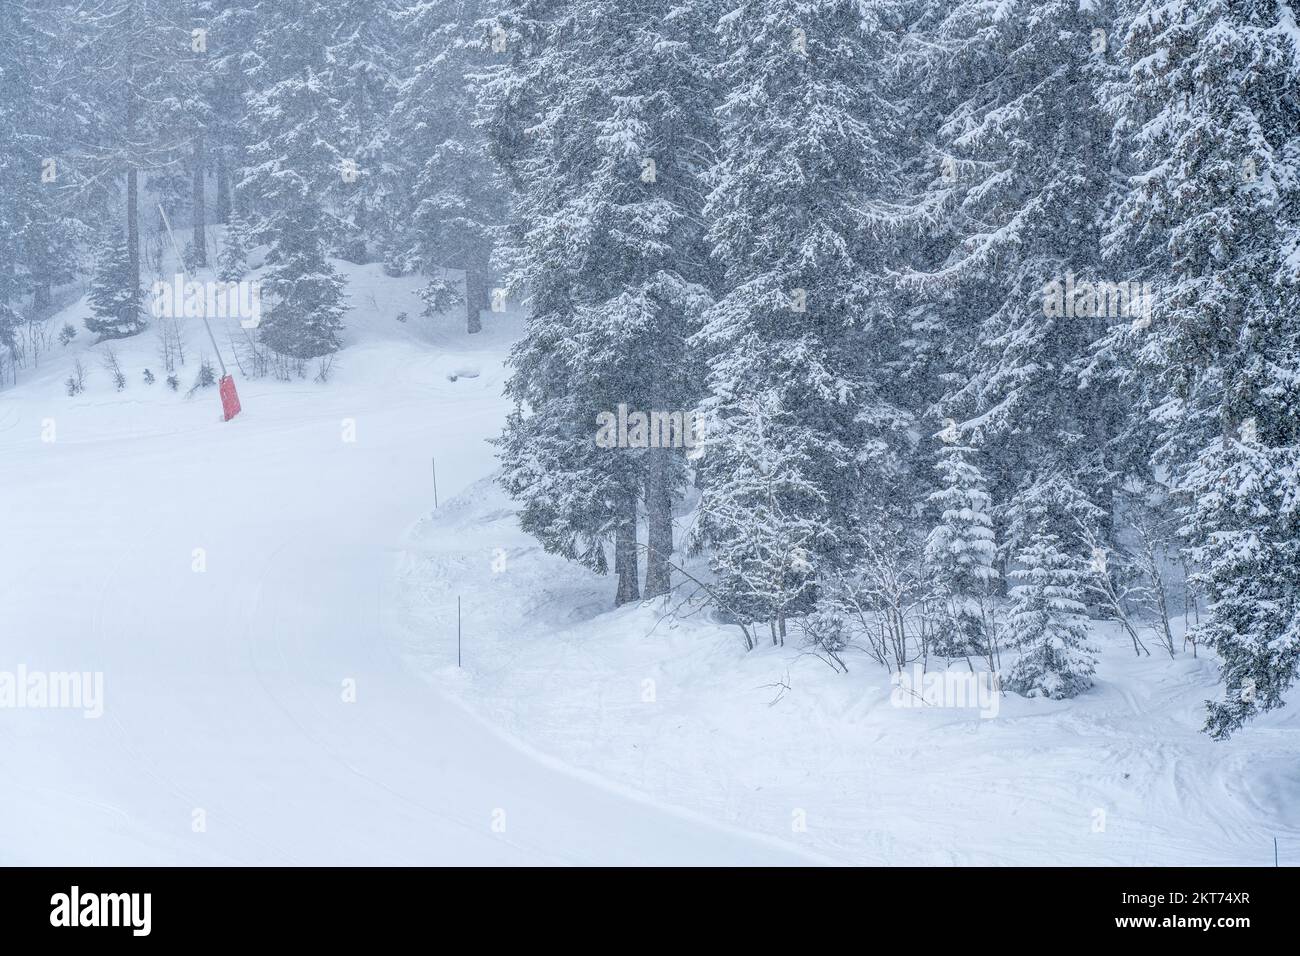 Schneesturm im Winter in einem Skigebiet. Grauer und bedeckter Tag mit schneebedeckten Bäumen. Hochwertiges Foto Stockfoto